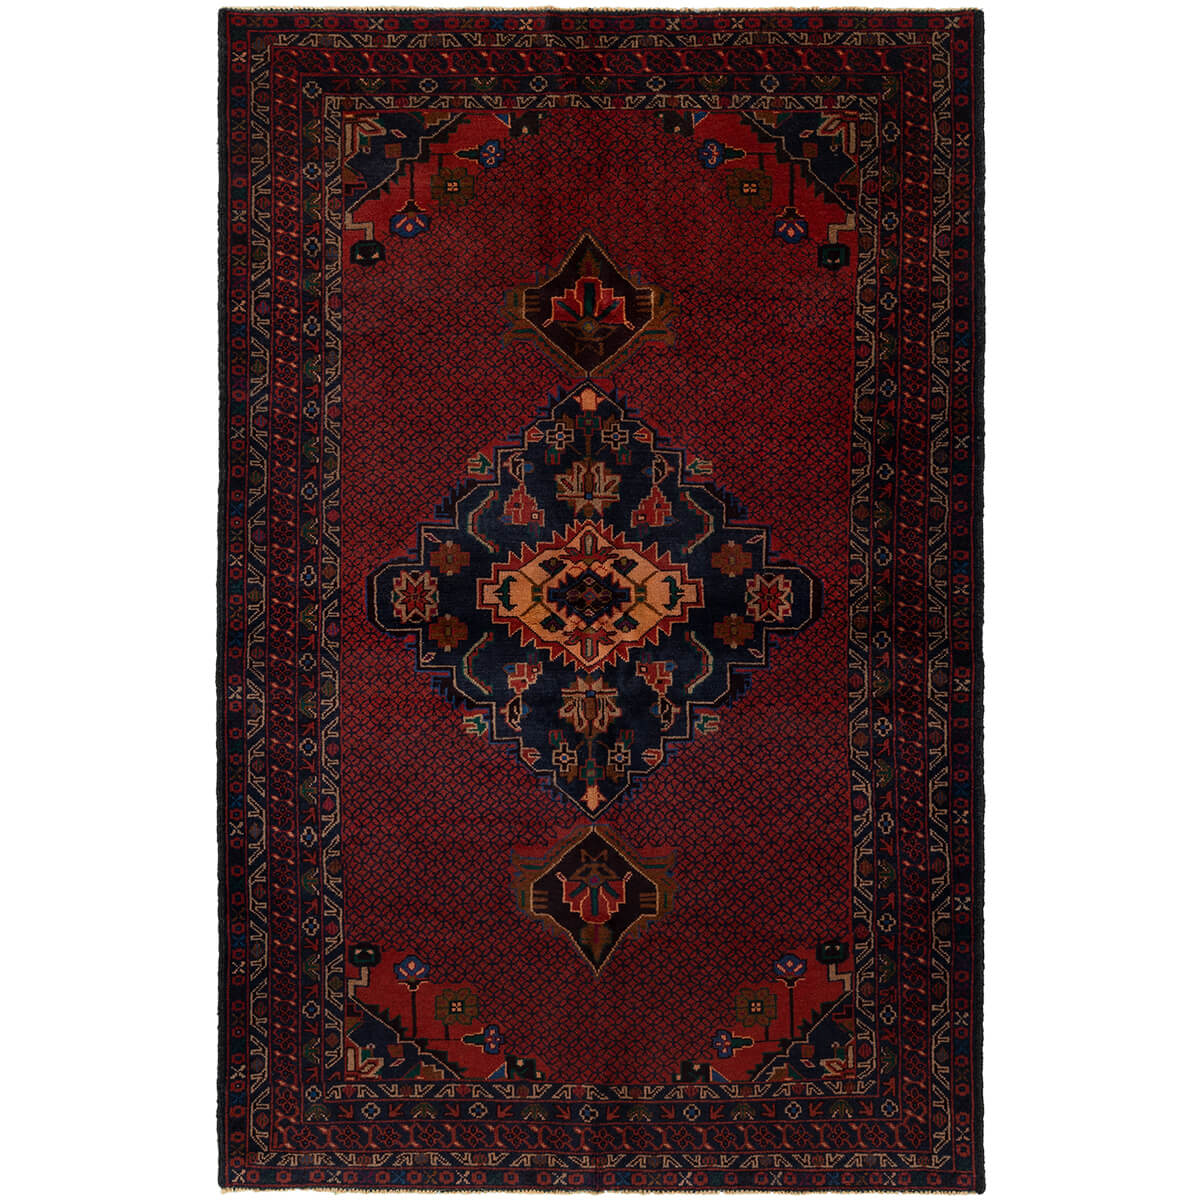 שטיח בלוץ' פרסי 00 צבעוני 214*120